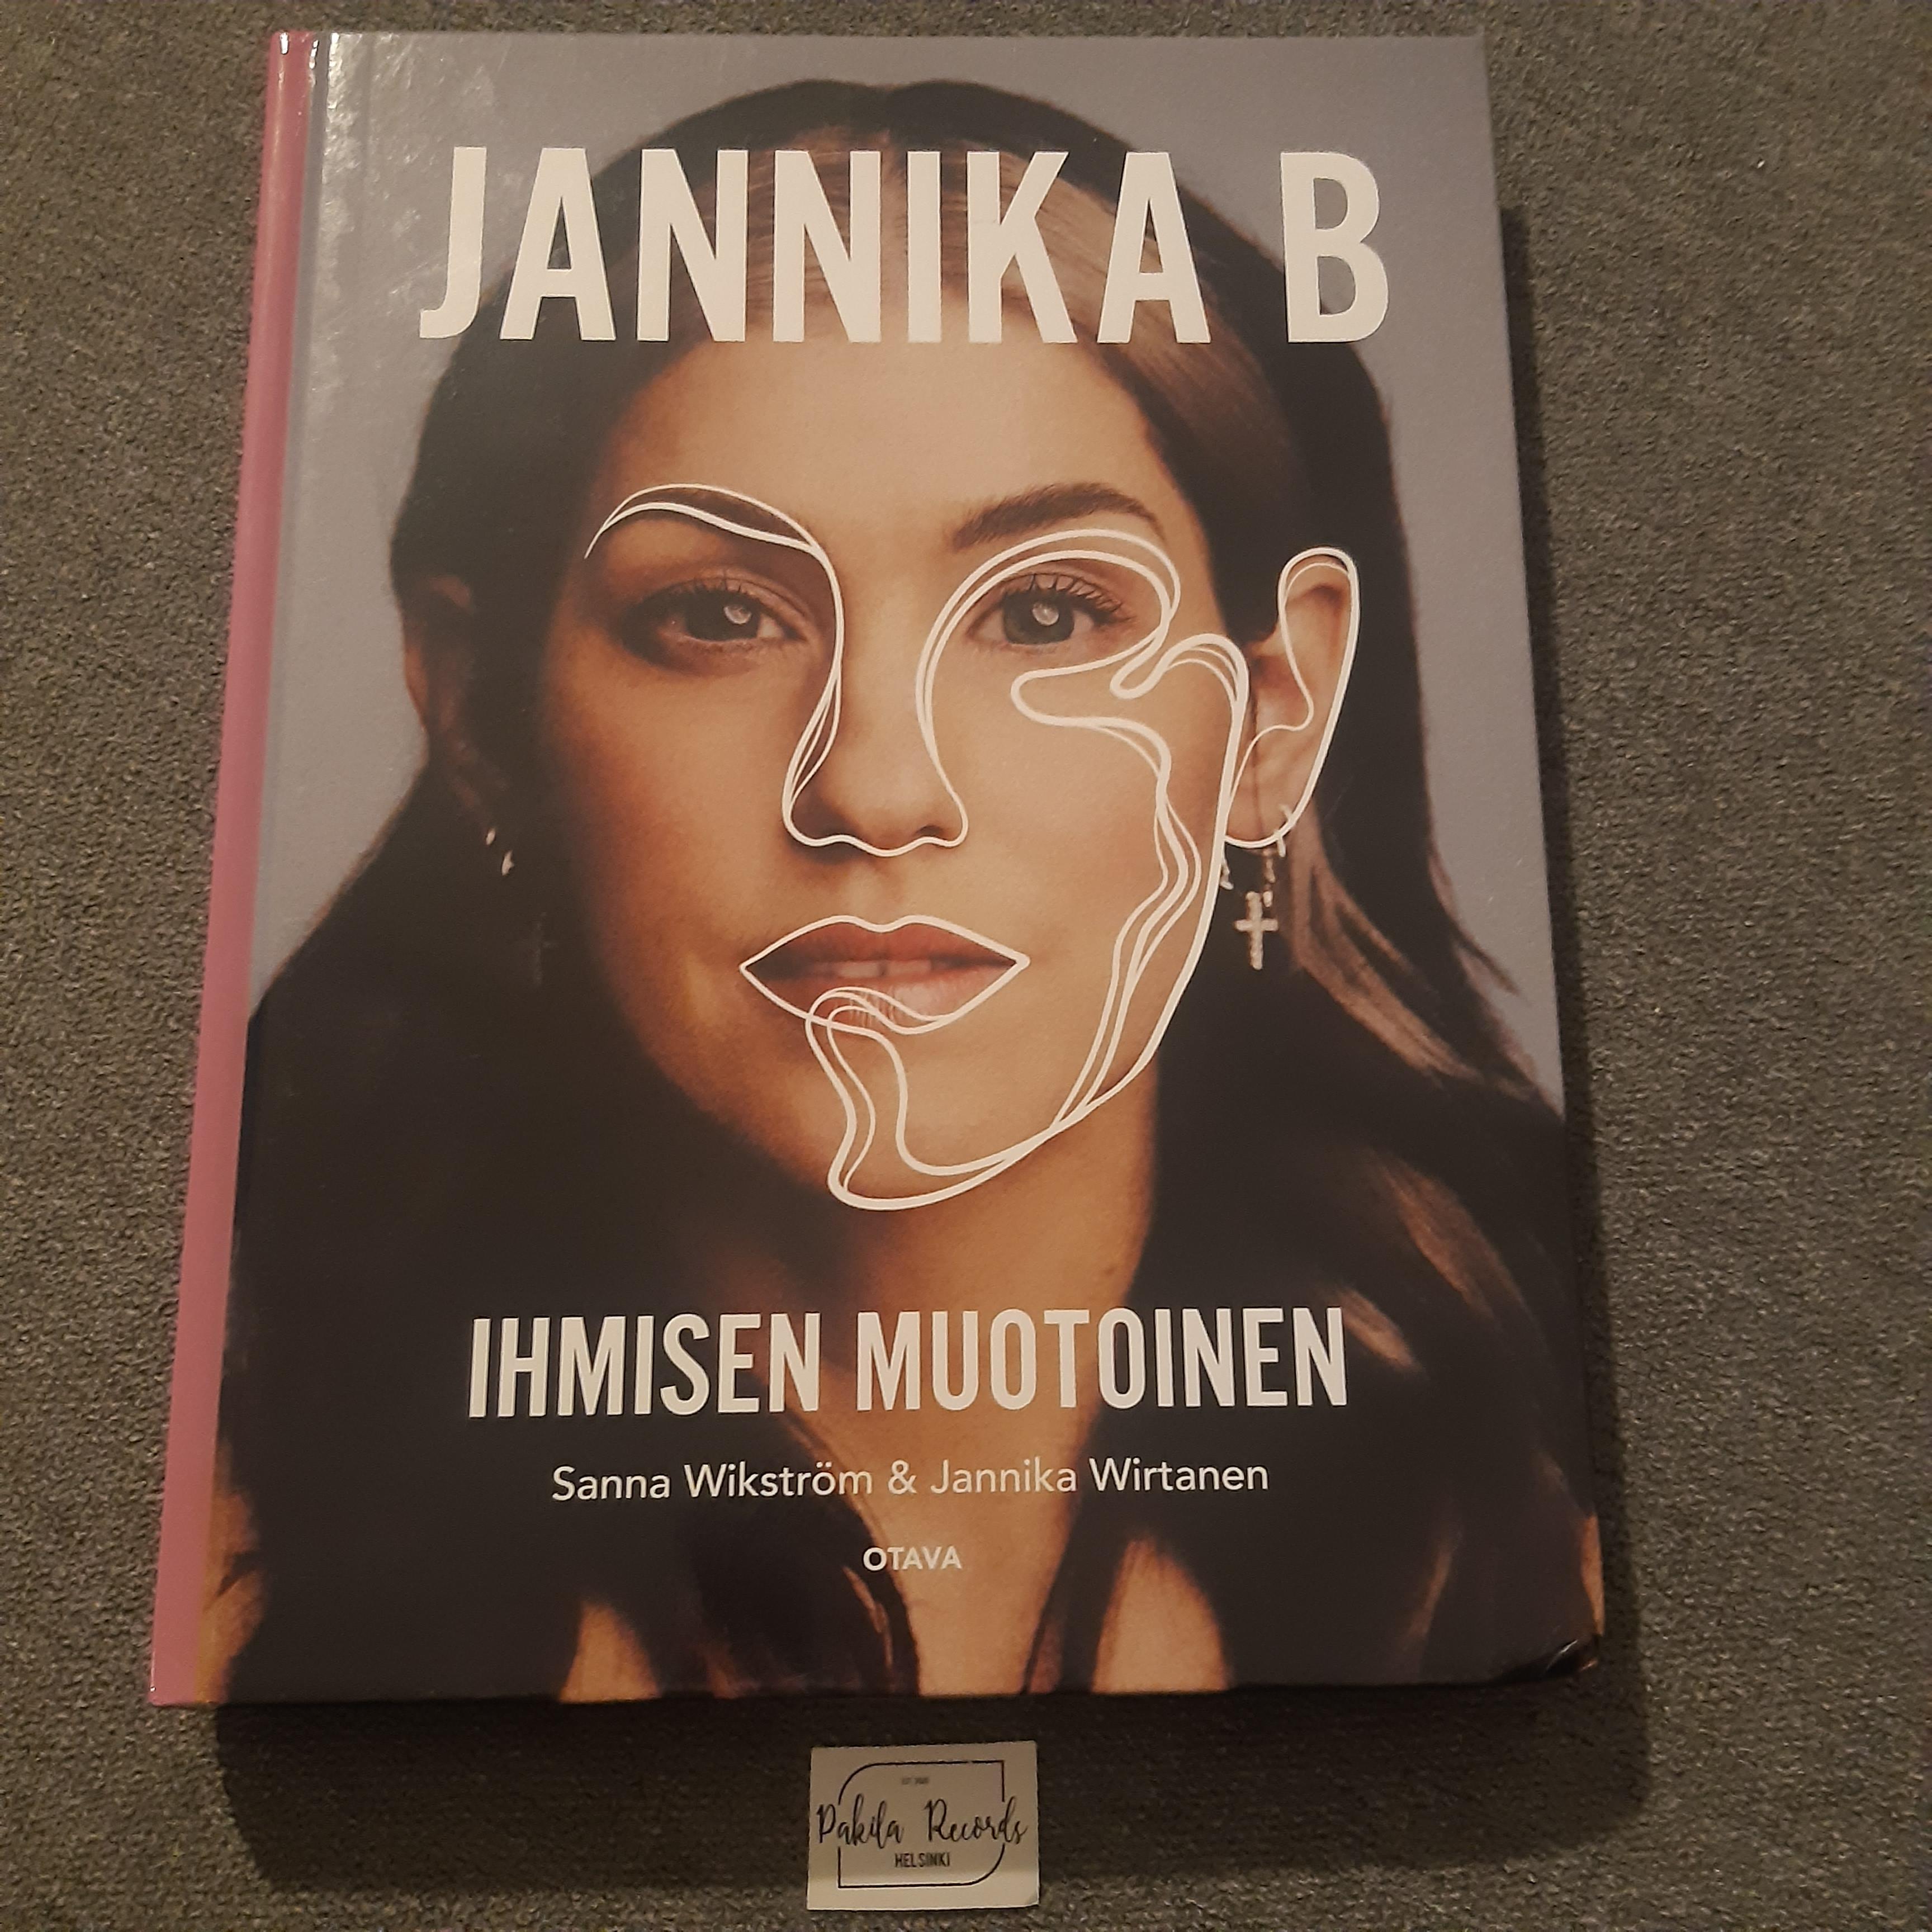 Jannika B, Ihmisen muotoinen - Sanna Wikström & Jannika Wirtanen - Kirja (käytetty)